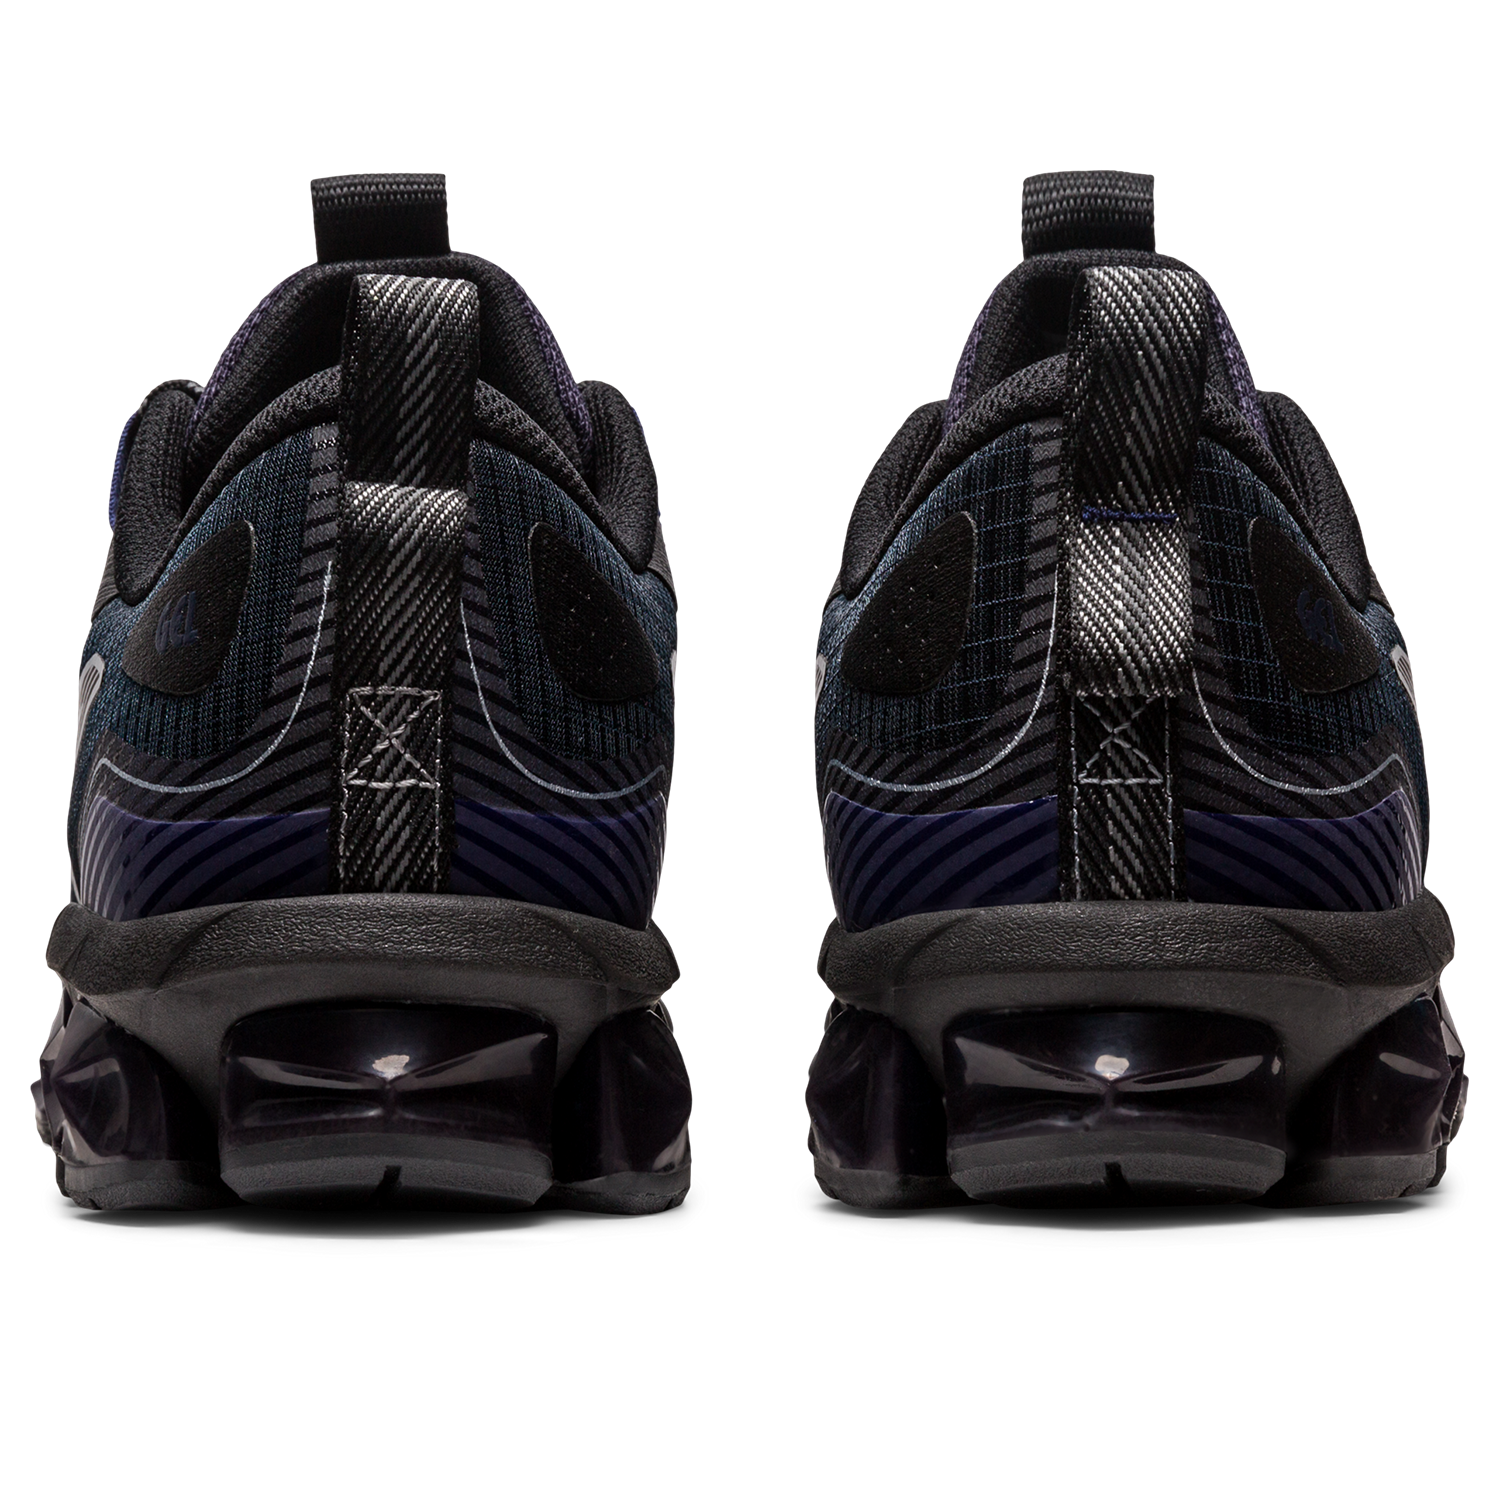 Asics Gel-Quantum 360 VII, Sneakers Homme, Asics